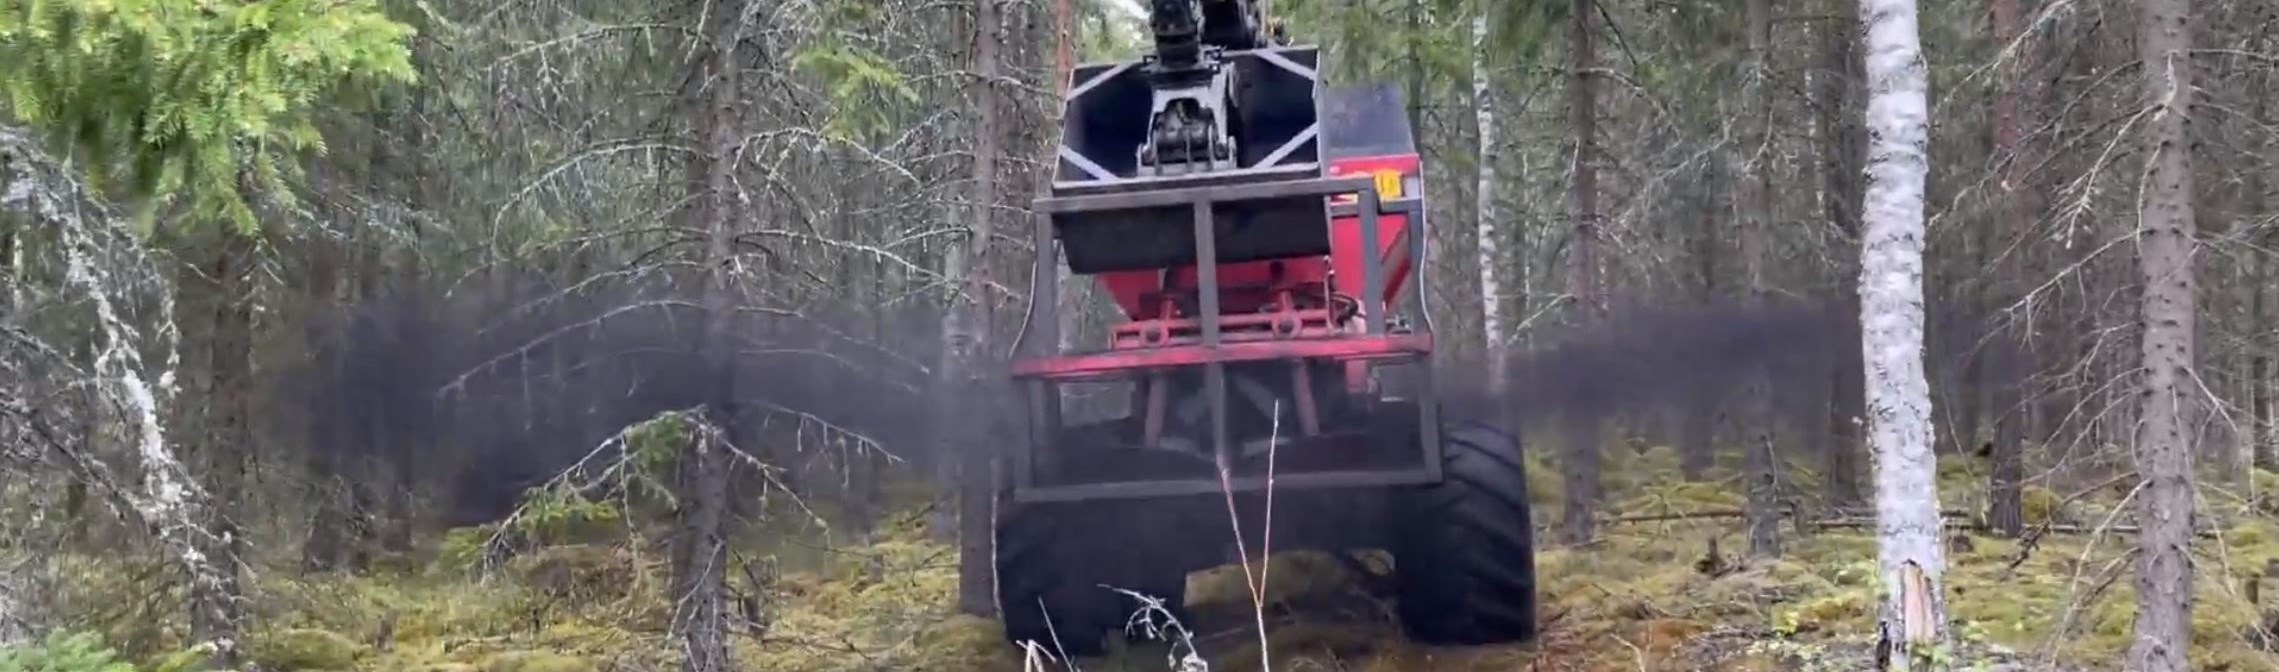 En skogsmaskin sprider ut aska i skogen